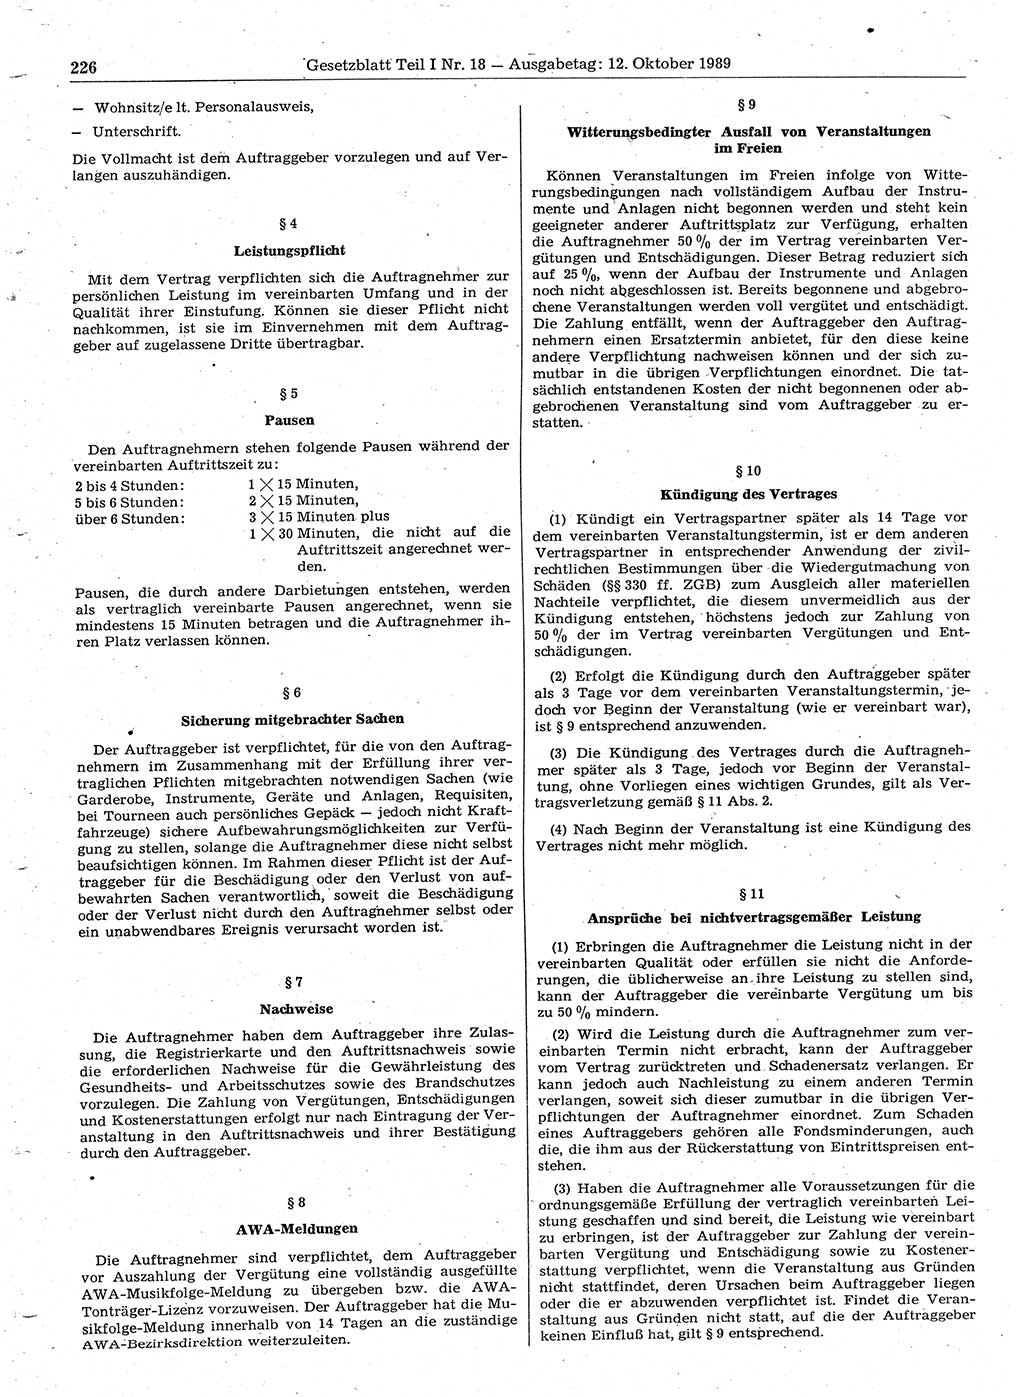 Gesetzblatt (GBl.) der Deutschen Demokratischen Republik (DDR) Teil Ⅰ 1989, Seite 226 (GBl. DDR Ⅰ 1989, S. 226)